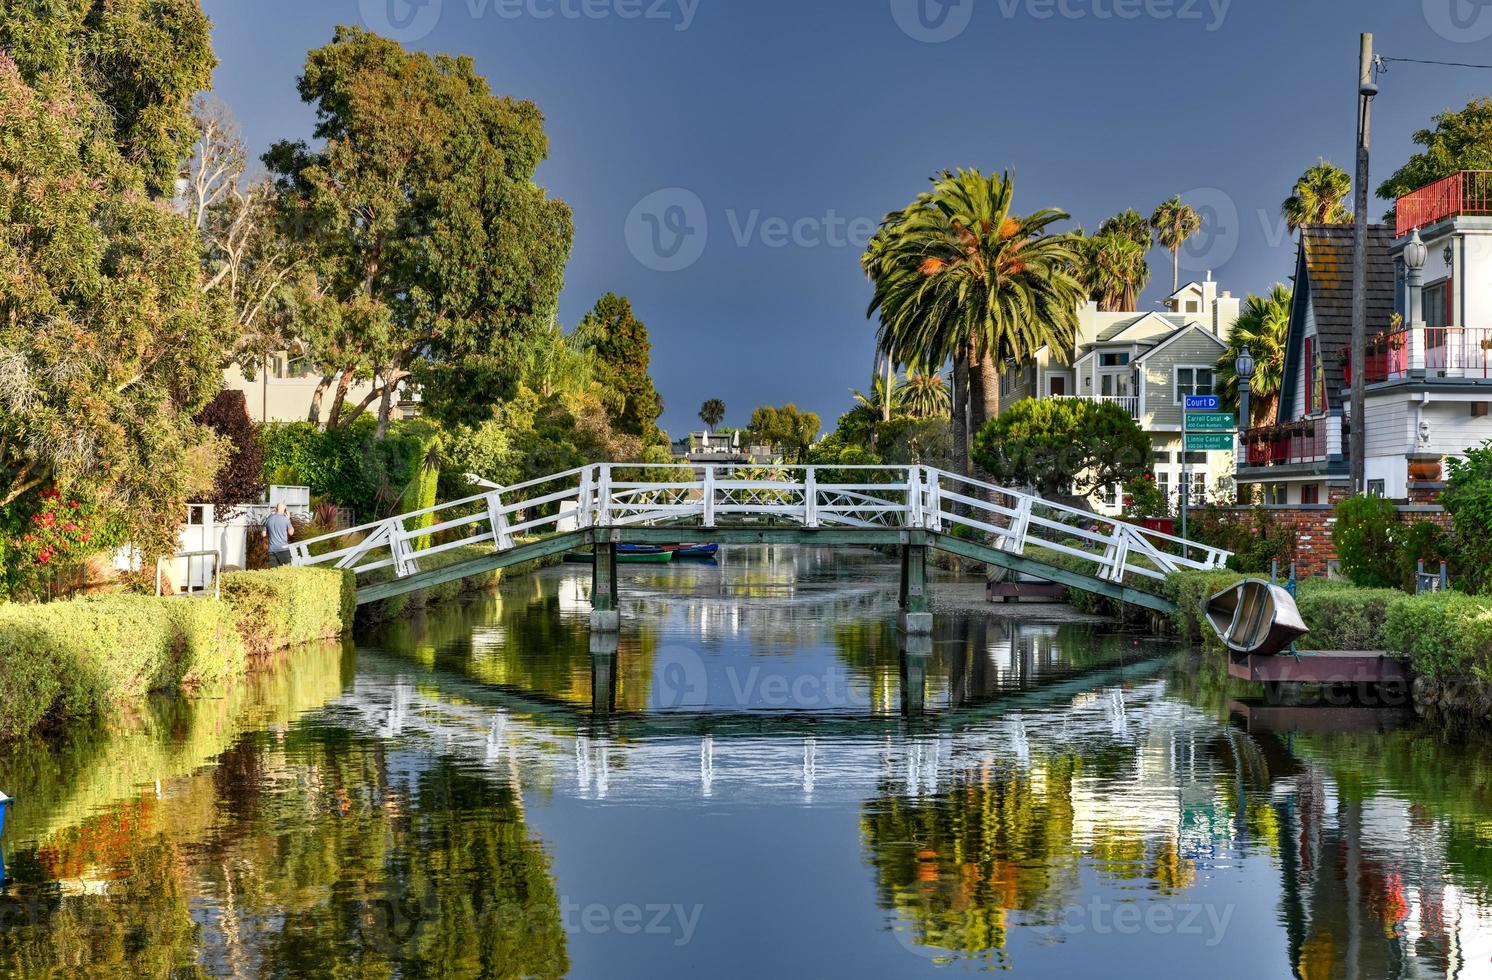 paisaje sereno y pacífico del distrito histórico del canal de venecia, los ángeles, california foto